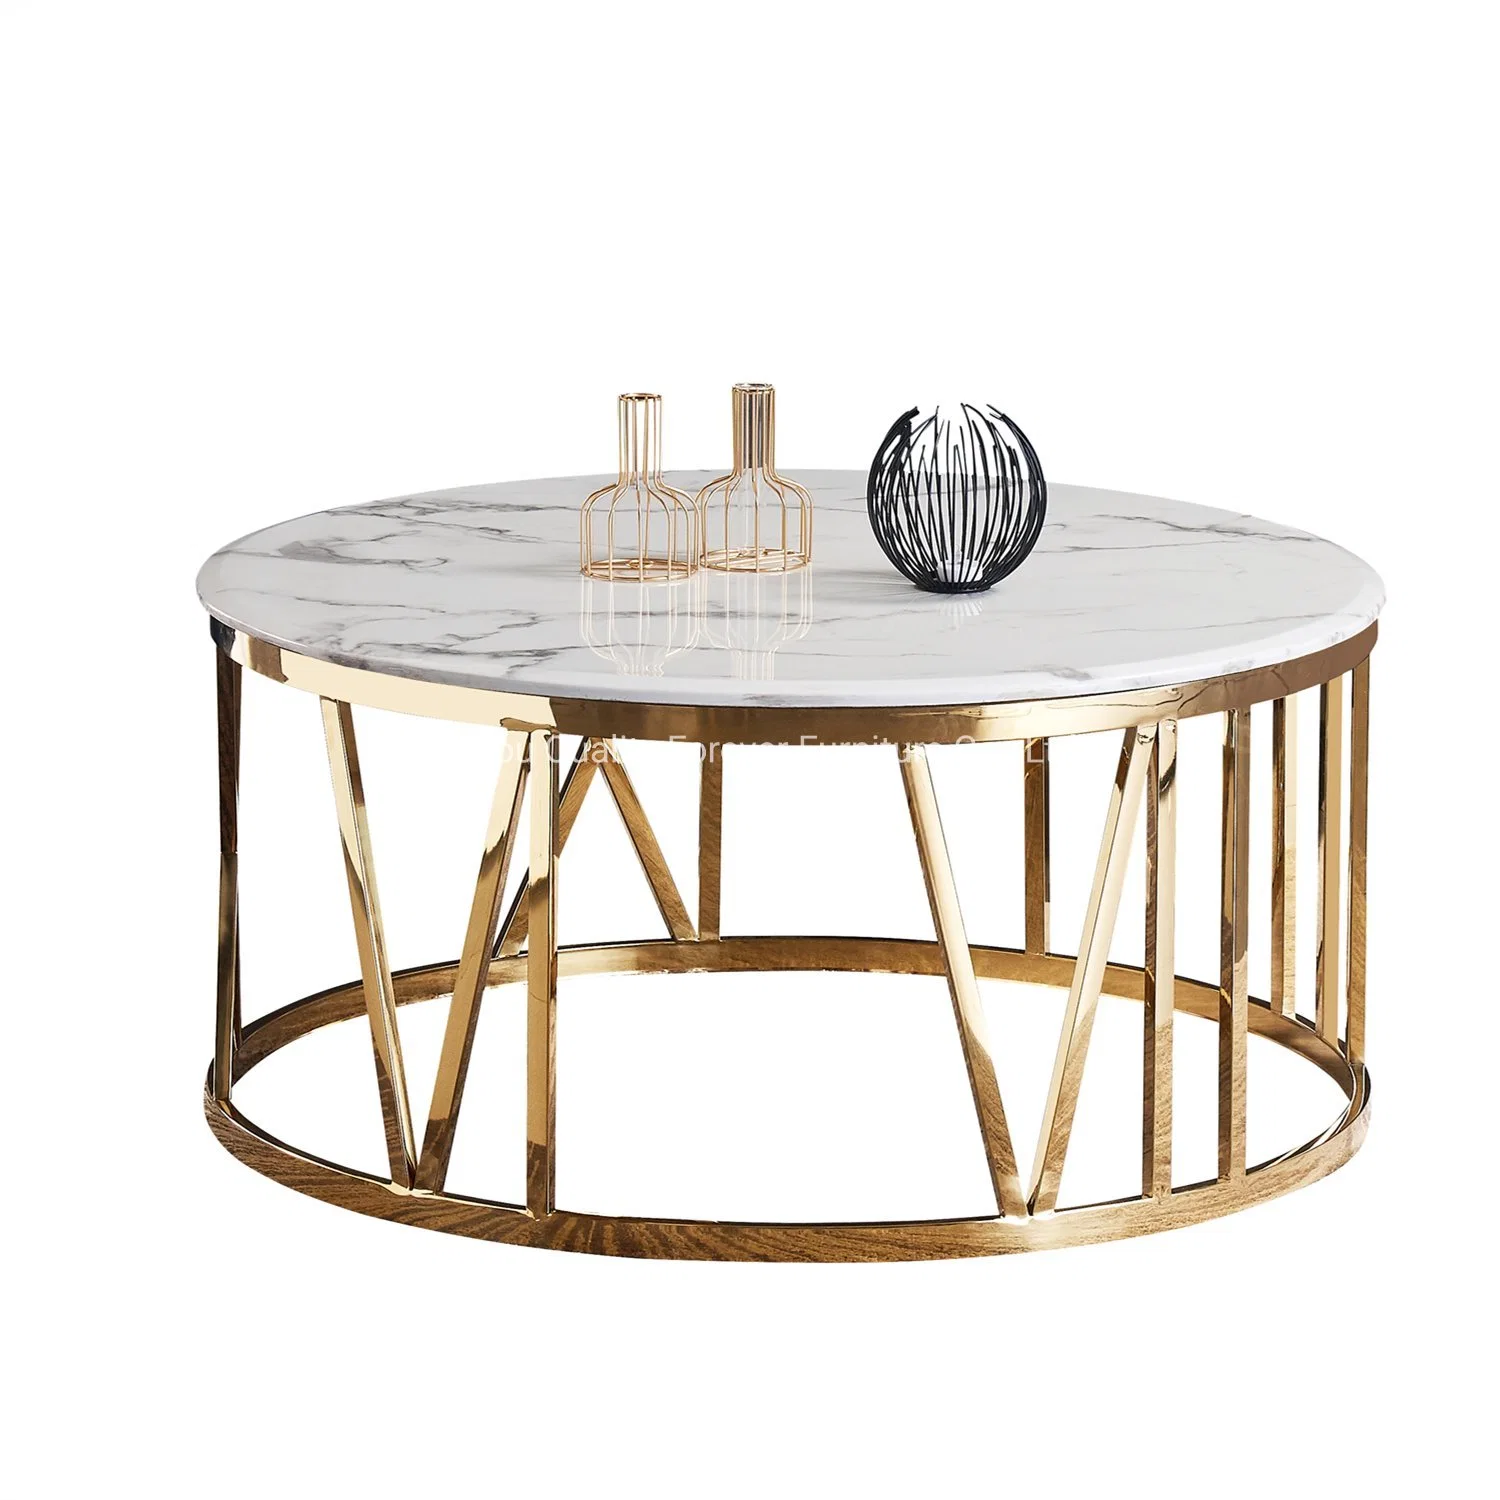 Meuble de salon moderne Table basse centrale en acier inoxydable doré et marbre blanc